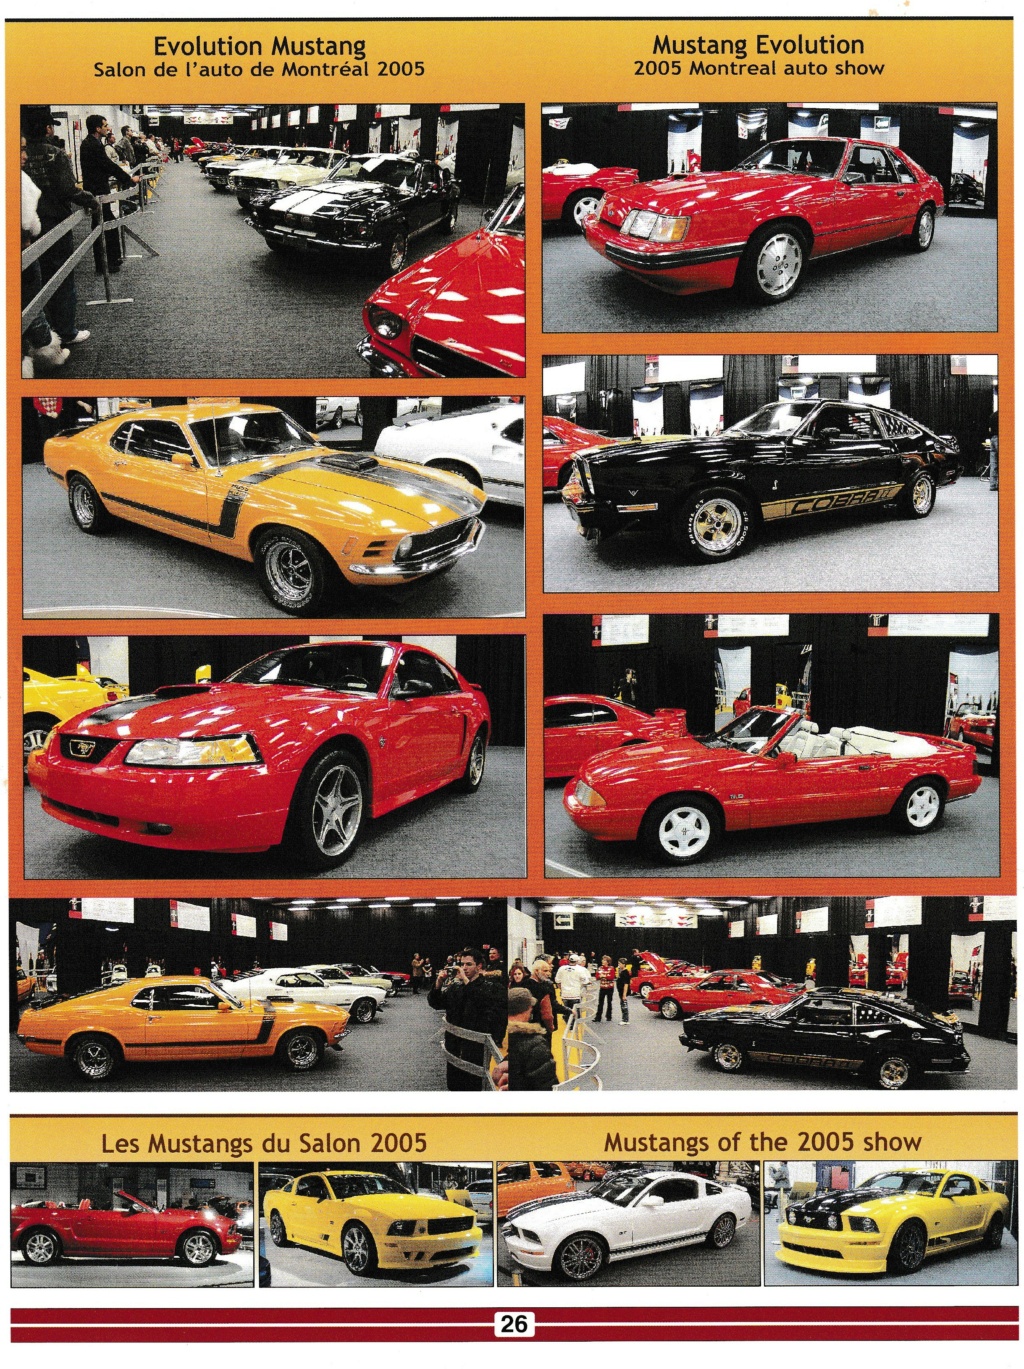 mustang - Montréal Mustang: 40 ans et + d’activités! (Photos-Vidéos,etc...) - Page 18 Img_2602